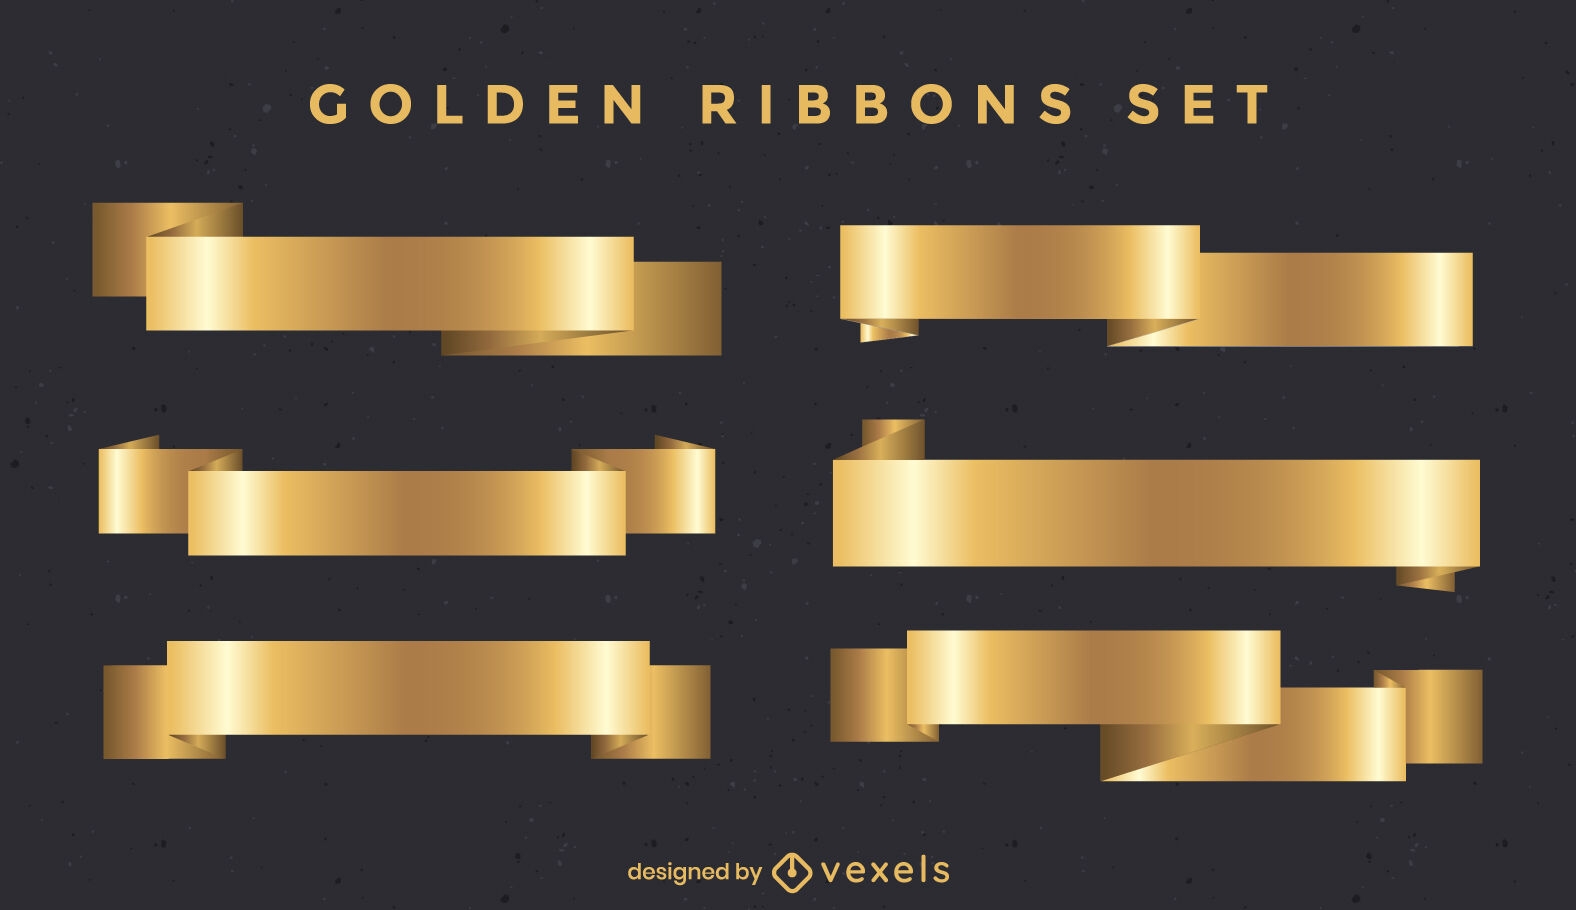 Golden ribbons set design